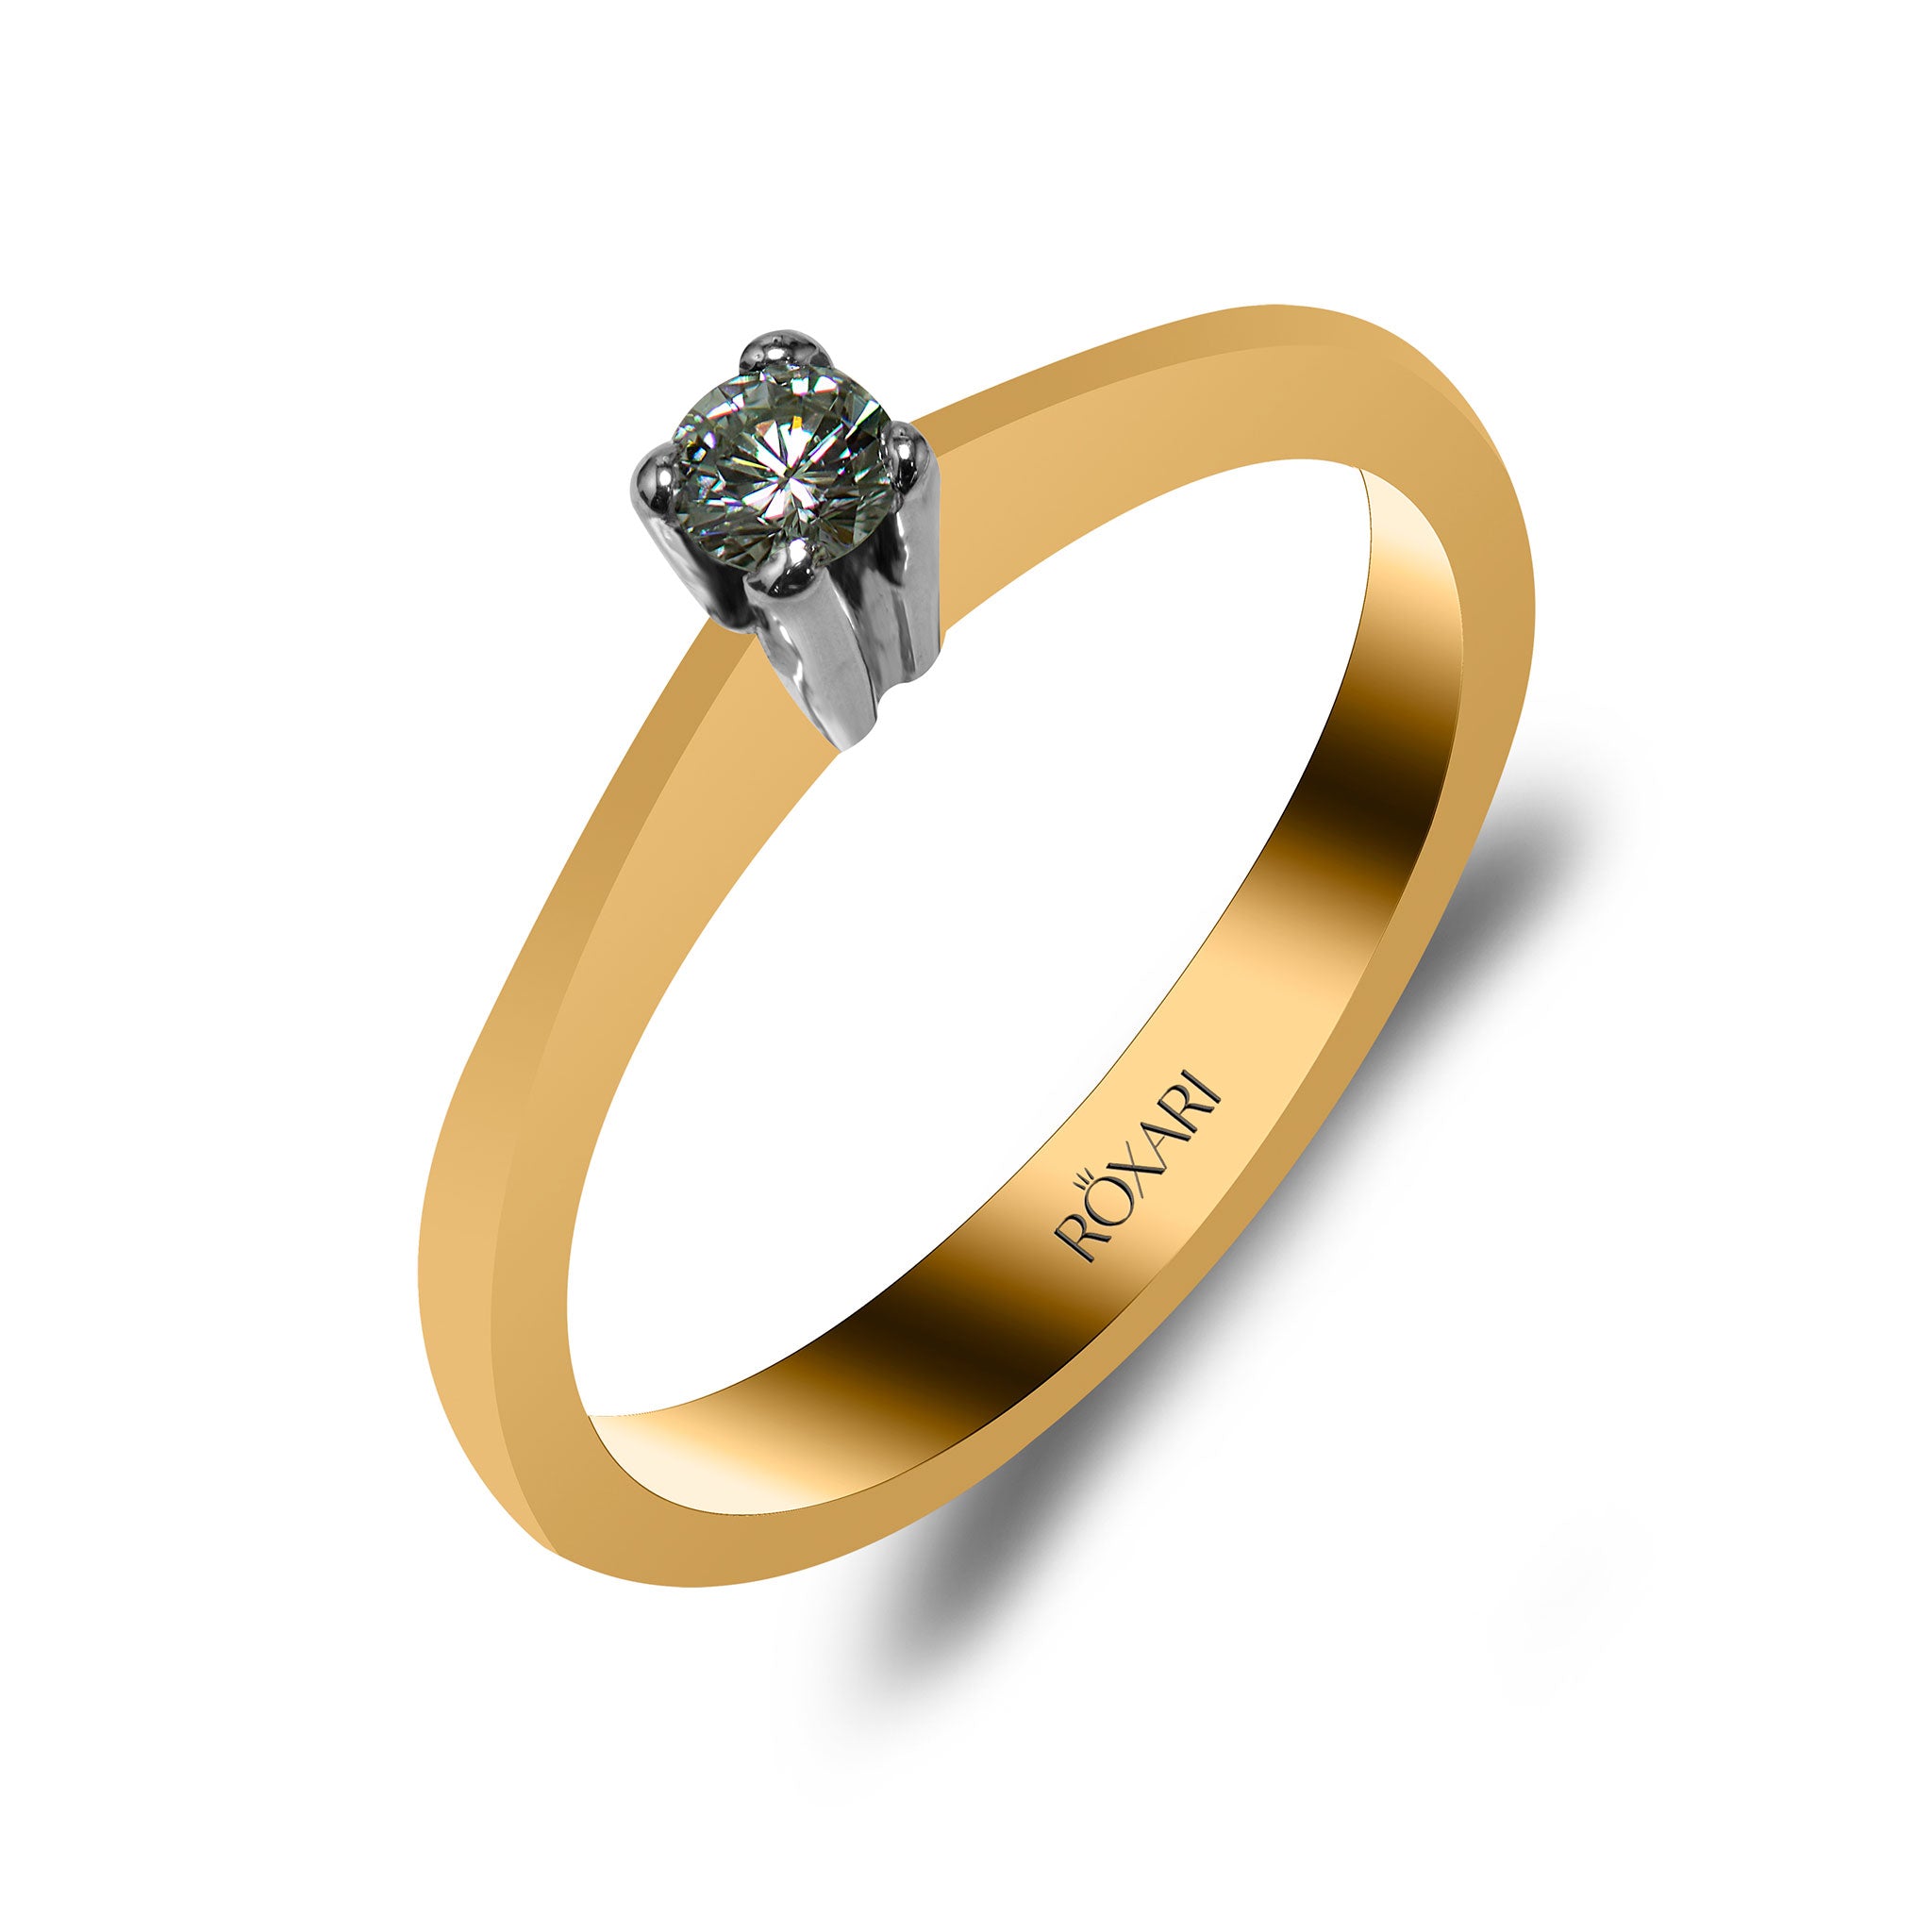 Buy Diamond Engagement Ring Online For Men - Tod